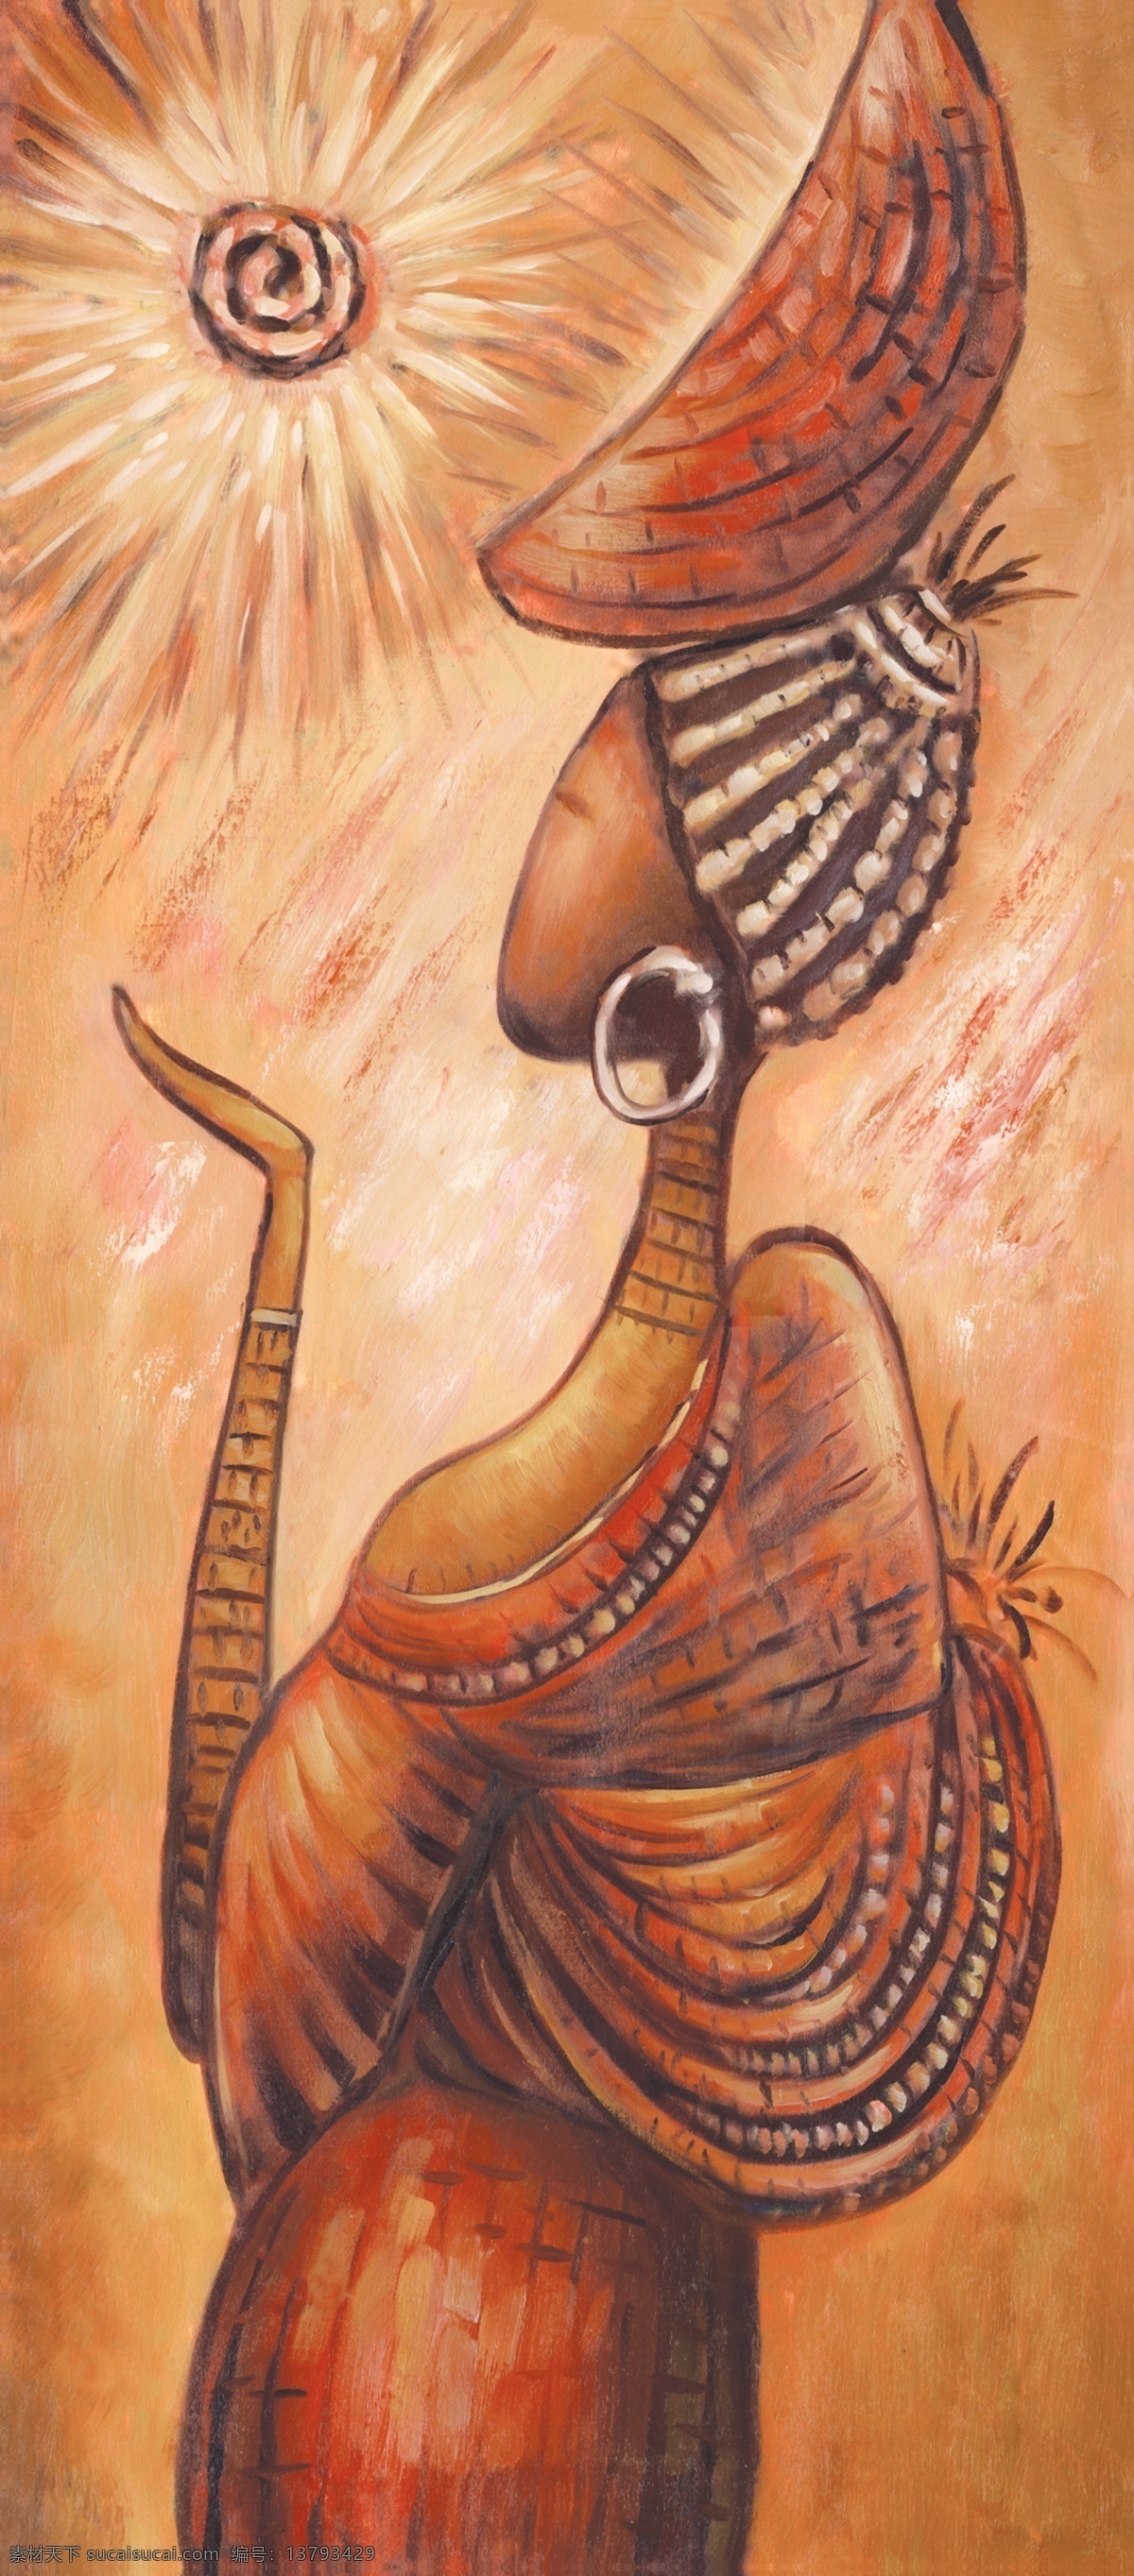 人物油画12 40厘米 x 90厘米 手绘 油画 装饰画 无框画 扫描 大图 清晰 写真 喷绘 印刷 肌理 效果 人物 写生 印度 女人 非洲 人物油画 绘画书法 文化艺术